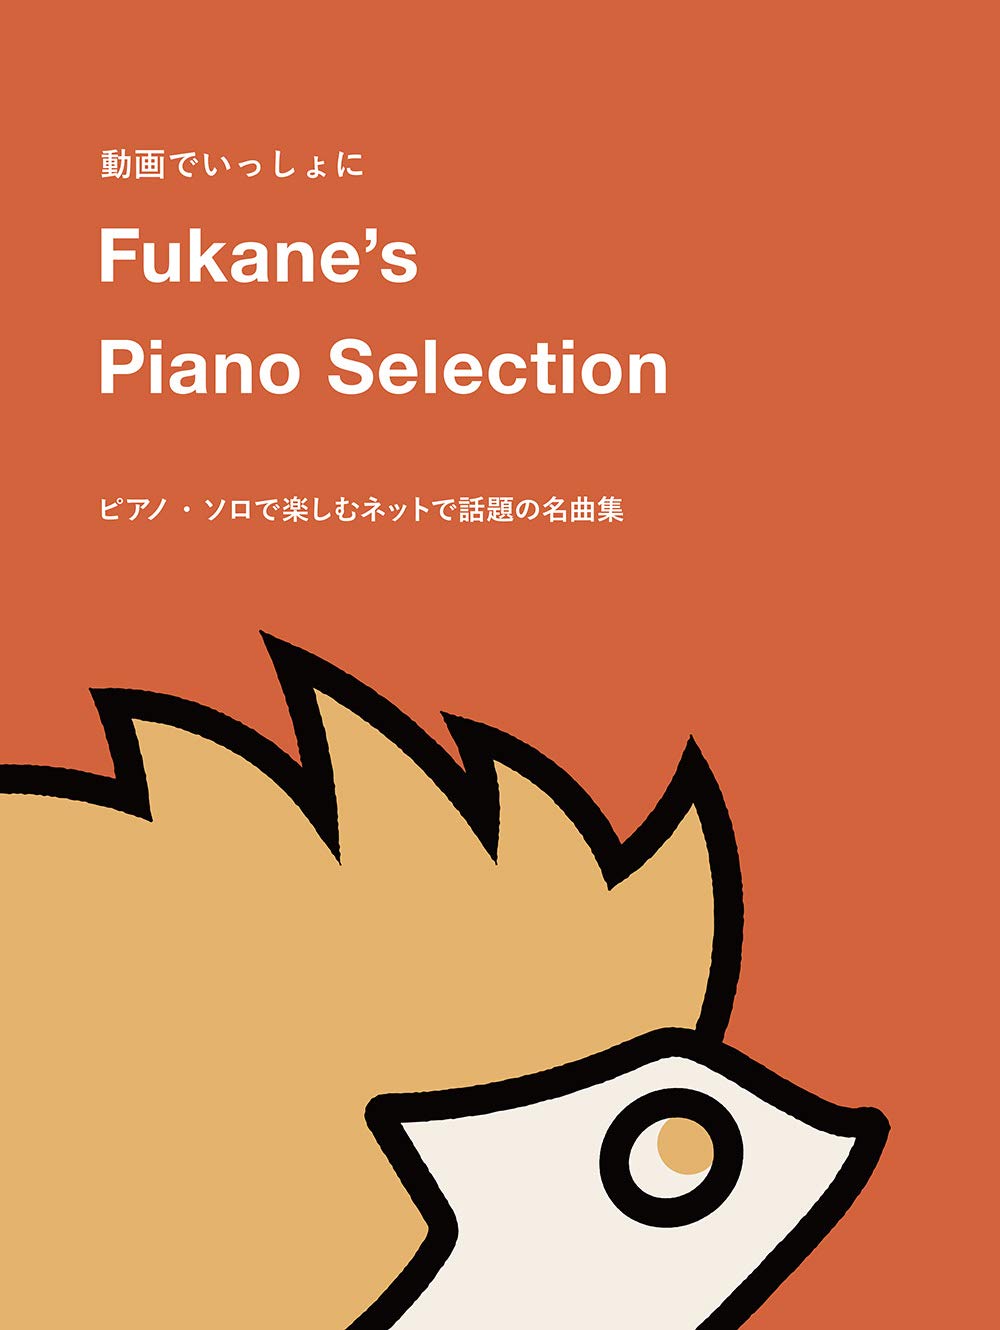 Fukane's Piano Selection ~ Piano solo popular in the net~